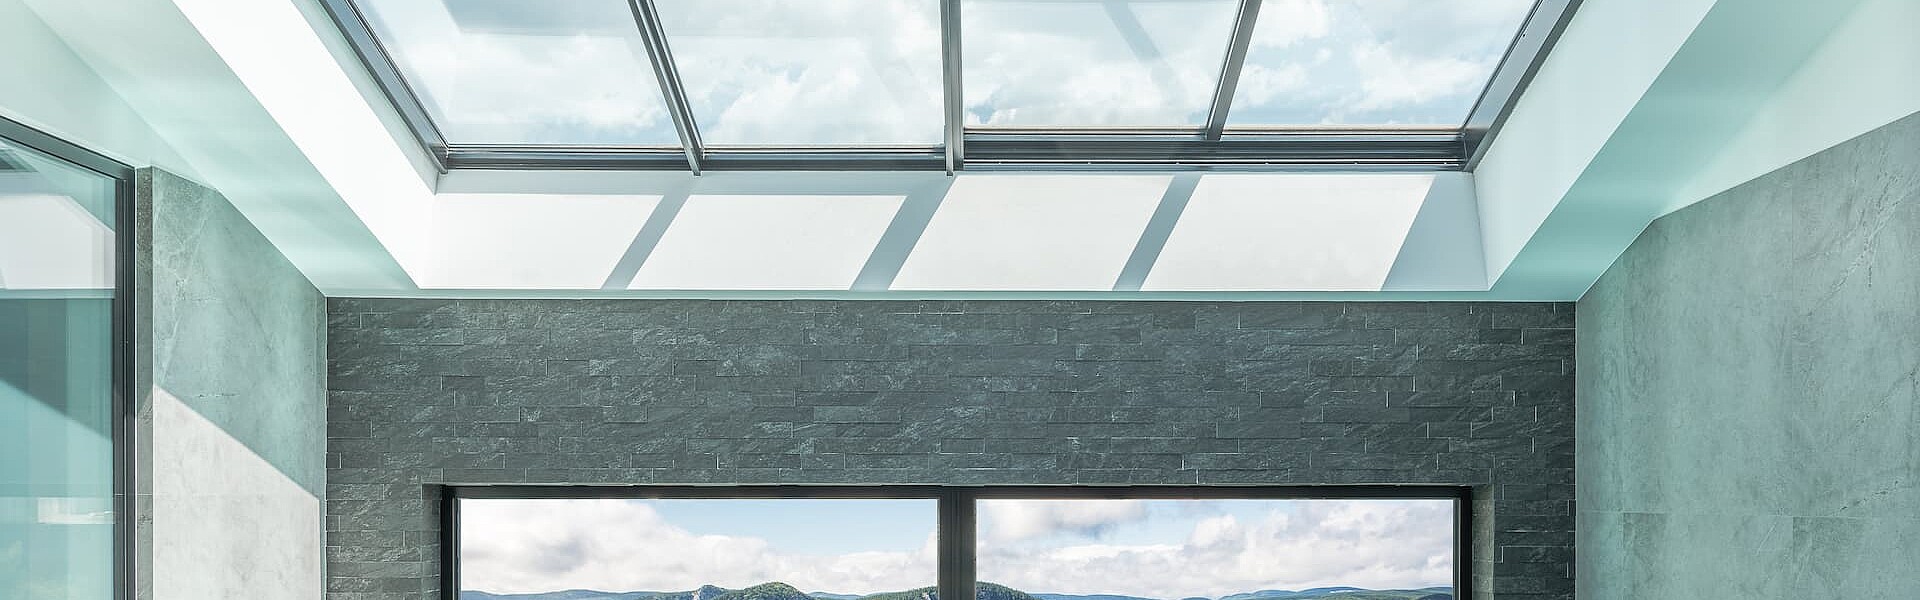 Axaar Dachflächenfenster über Indoor-Pool für angenehmes Tageslicht